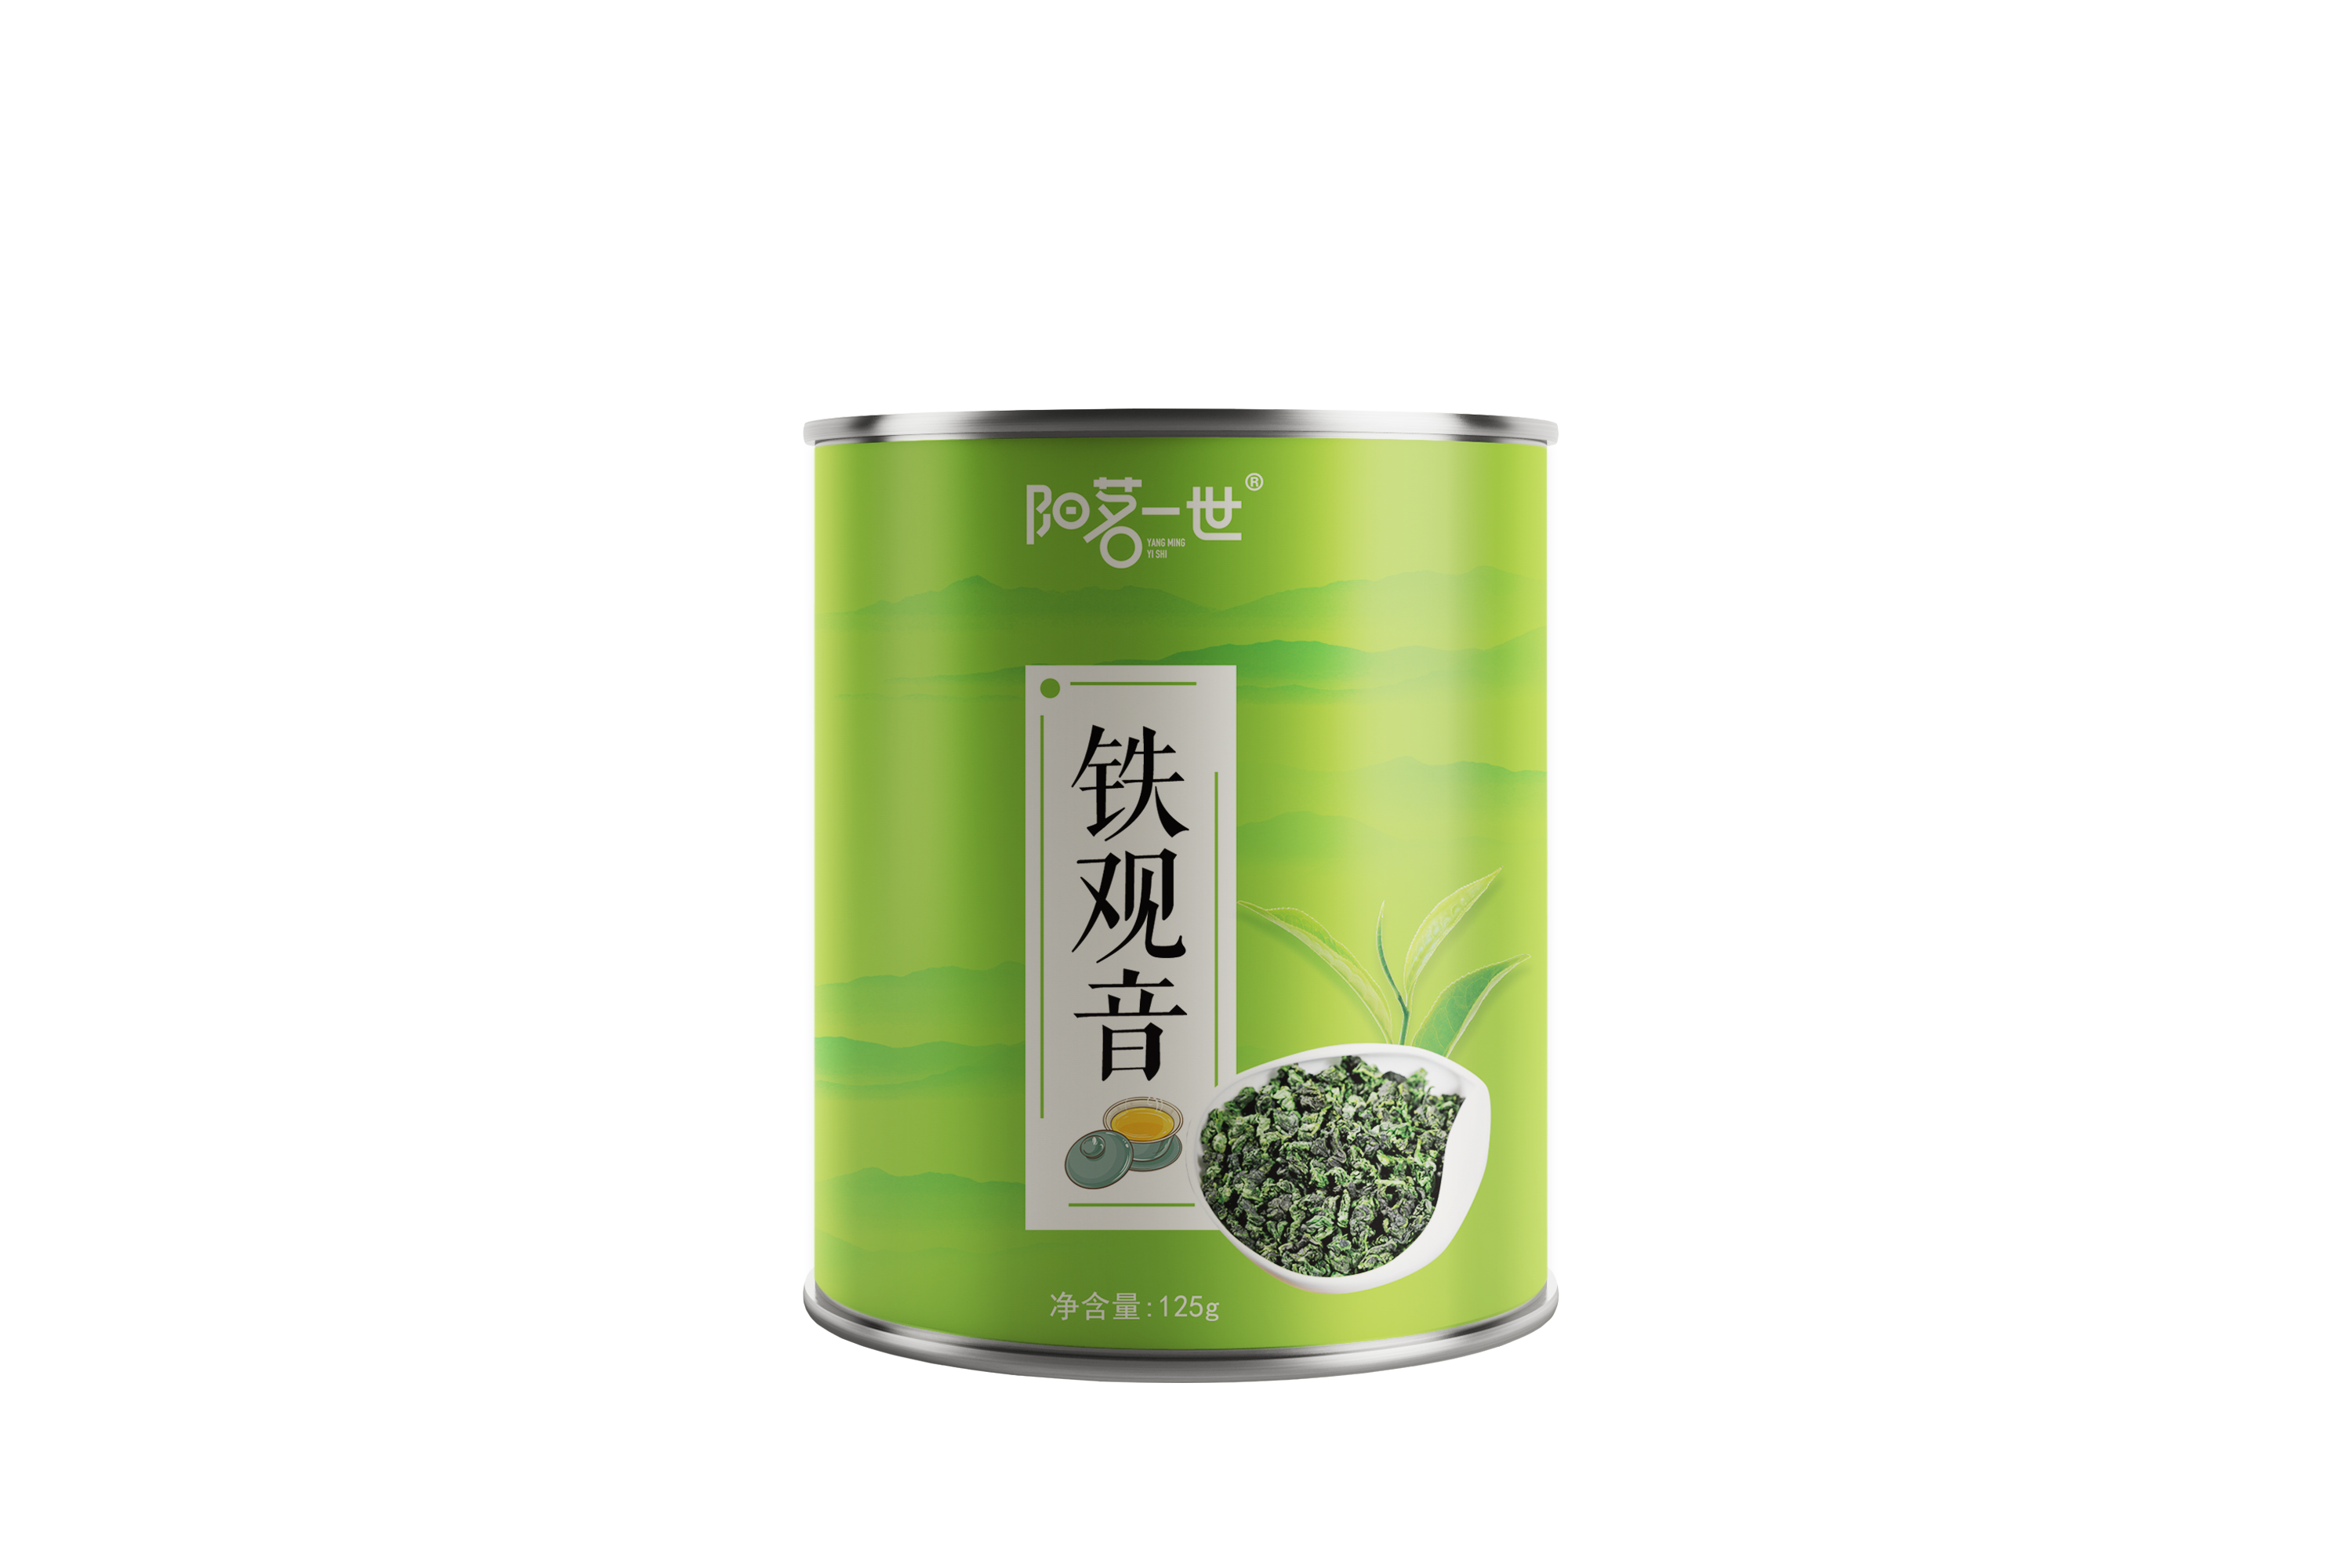 广村茉香绿茶 特选茉香绿茶 茶叶500G 珍珠奶茶原材料-阿里巴巴